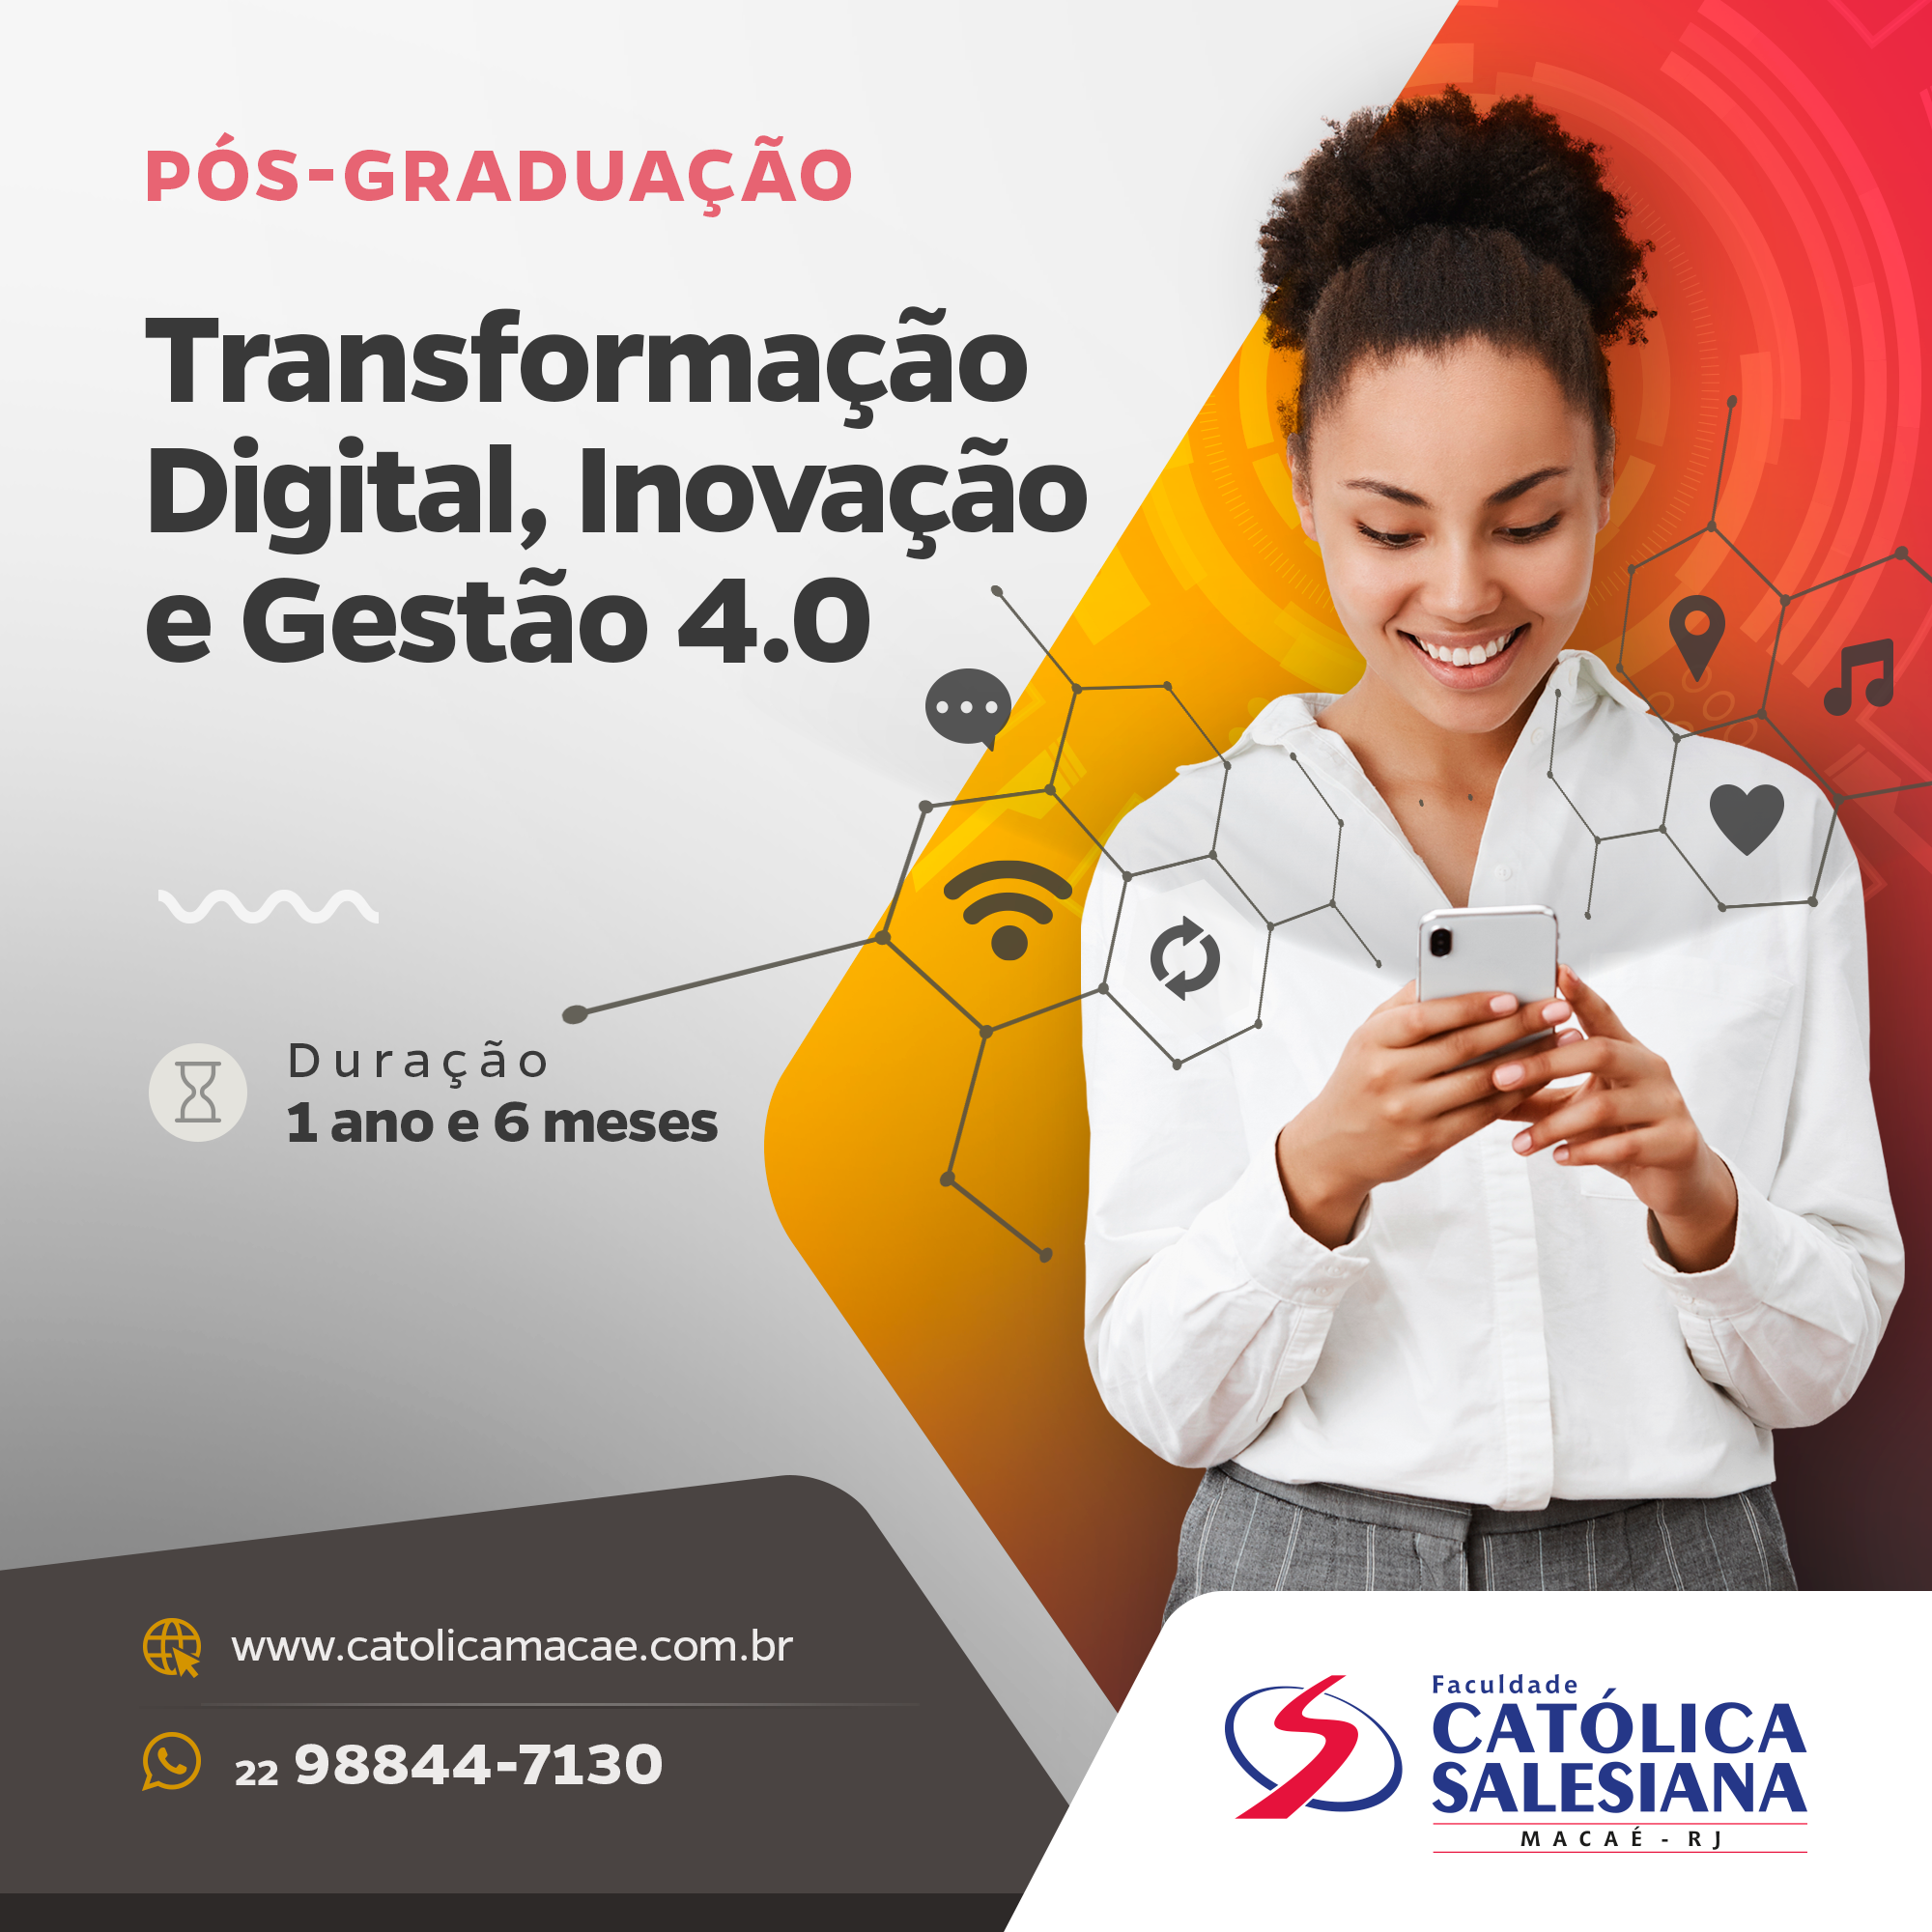 Católica Salesiana lança pós-graduação em Transformação Digital, Inovação e Gestão 4.0